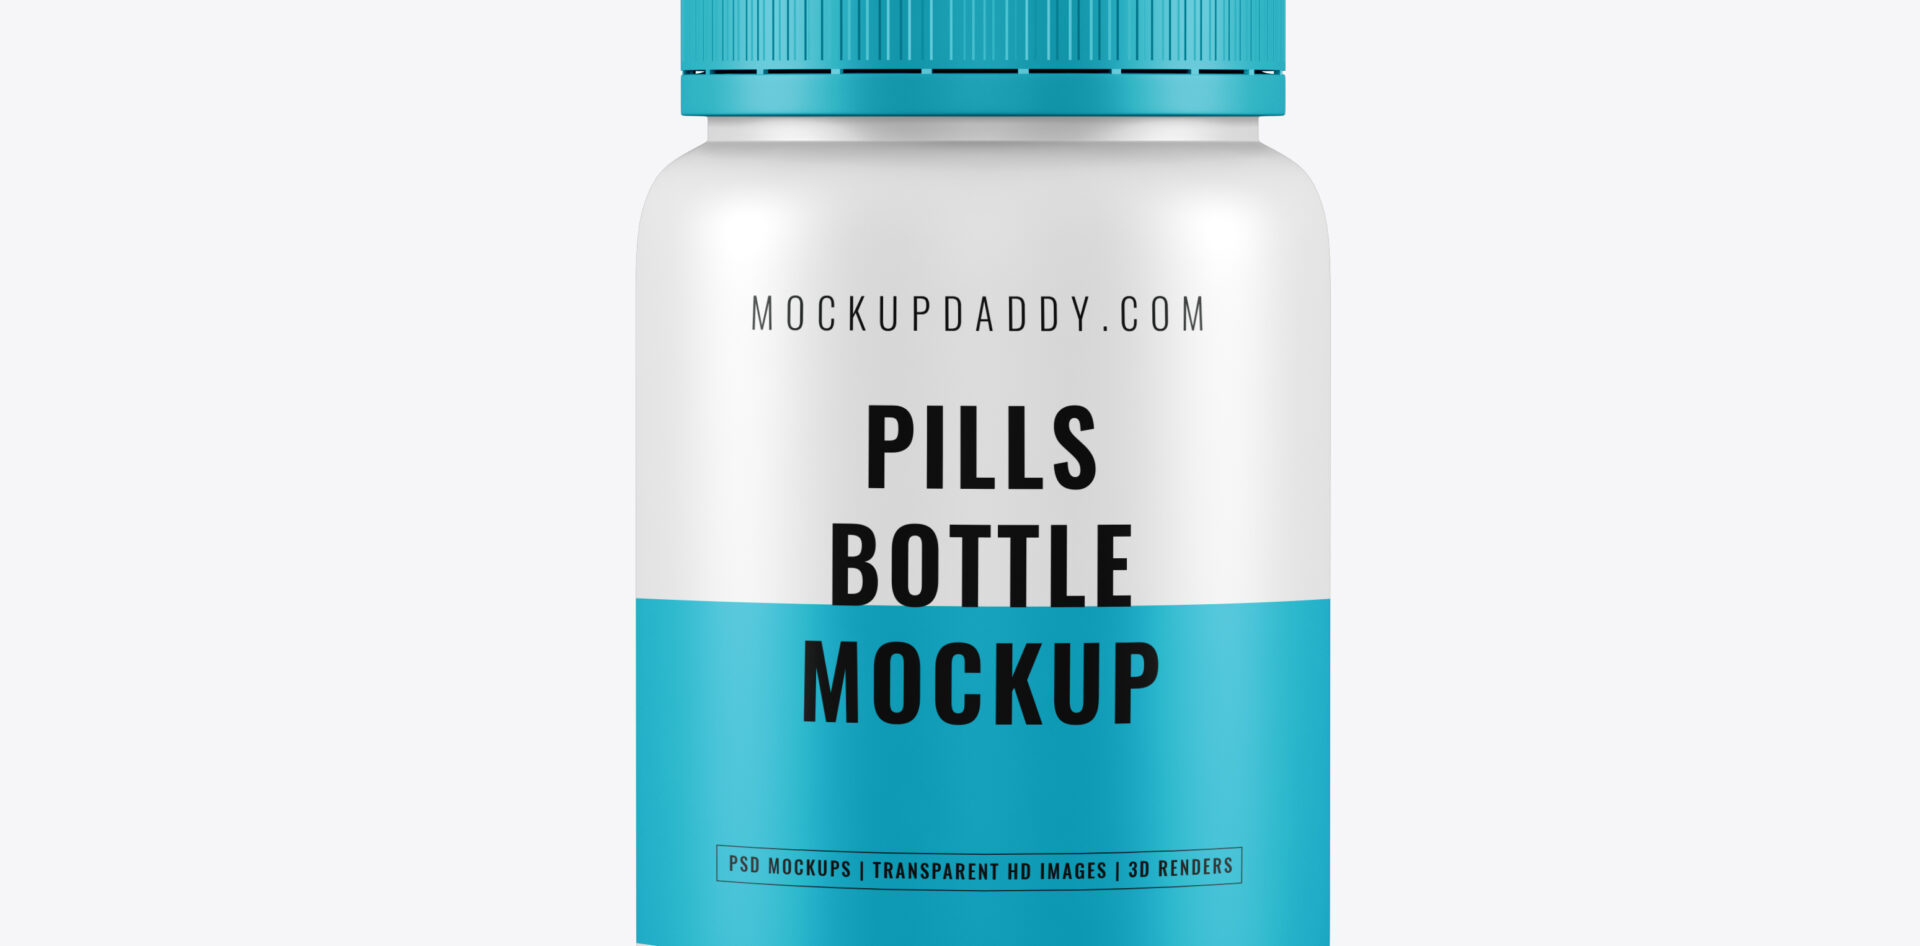 Pills Bottle Mockup Free Download